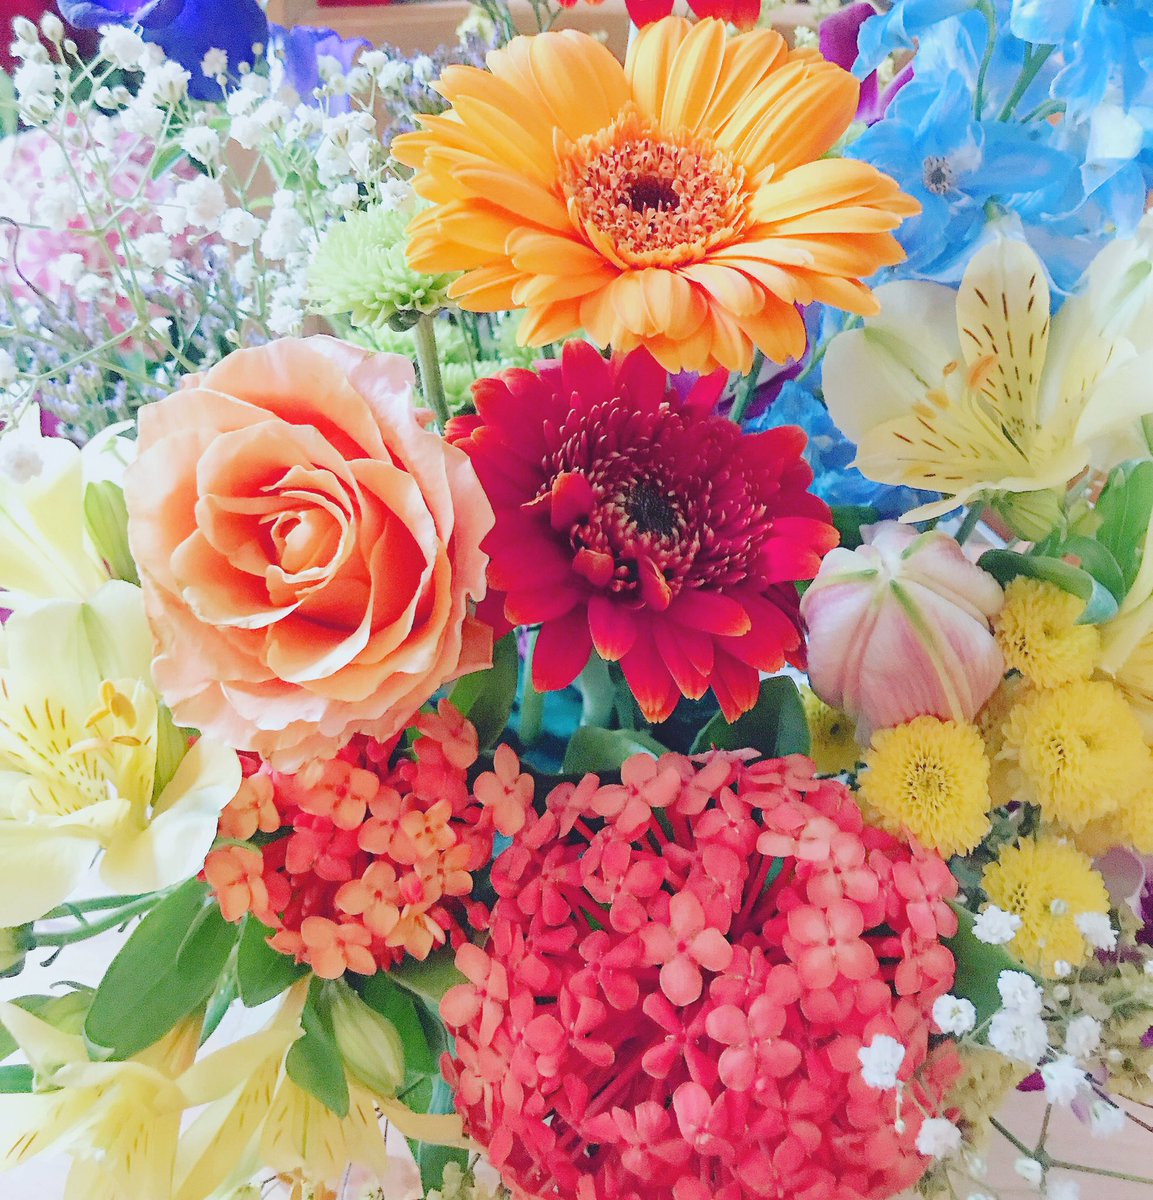 17unjour1999 V Twitter 明るい日差しに明るい花たち 元気カラー こんな明るい世の中に早くなってほしいな 今日は午後からアトリエにお花を取りに来られる方達へ 花の準備中 花のある暮らし 元気が出る コロナに負けるな 明るい花 Unjour1999